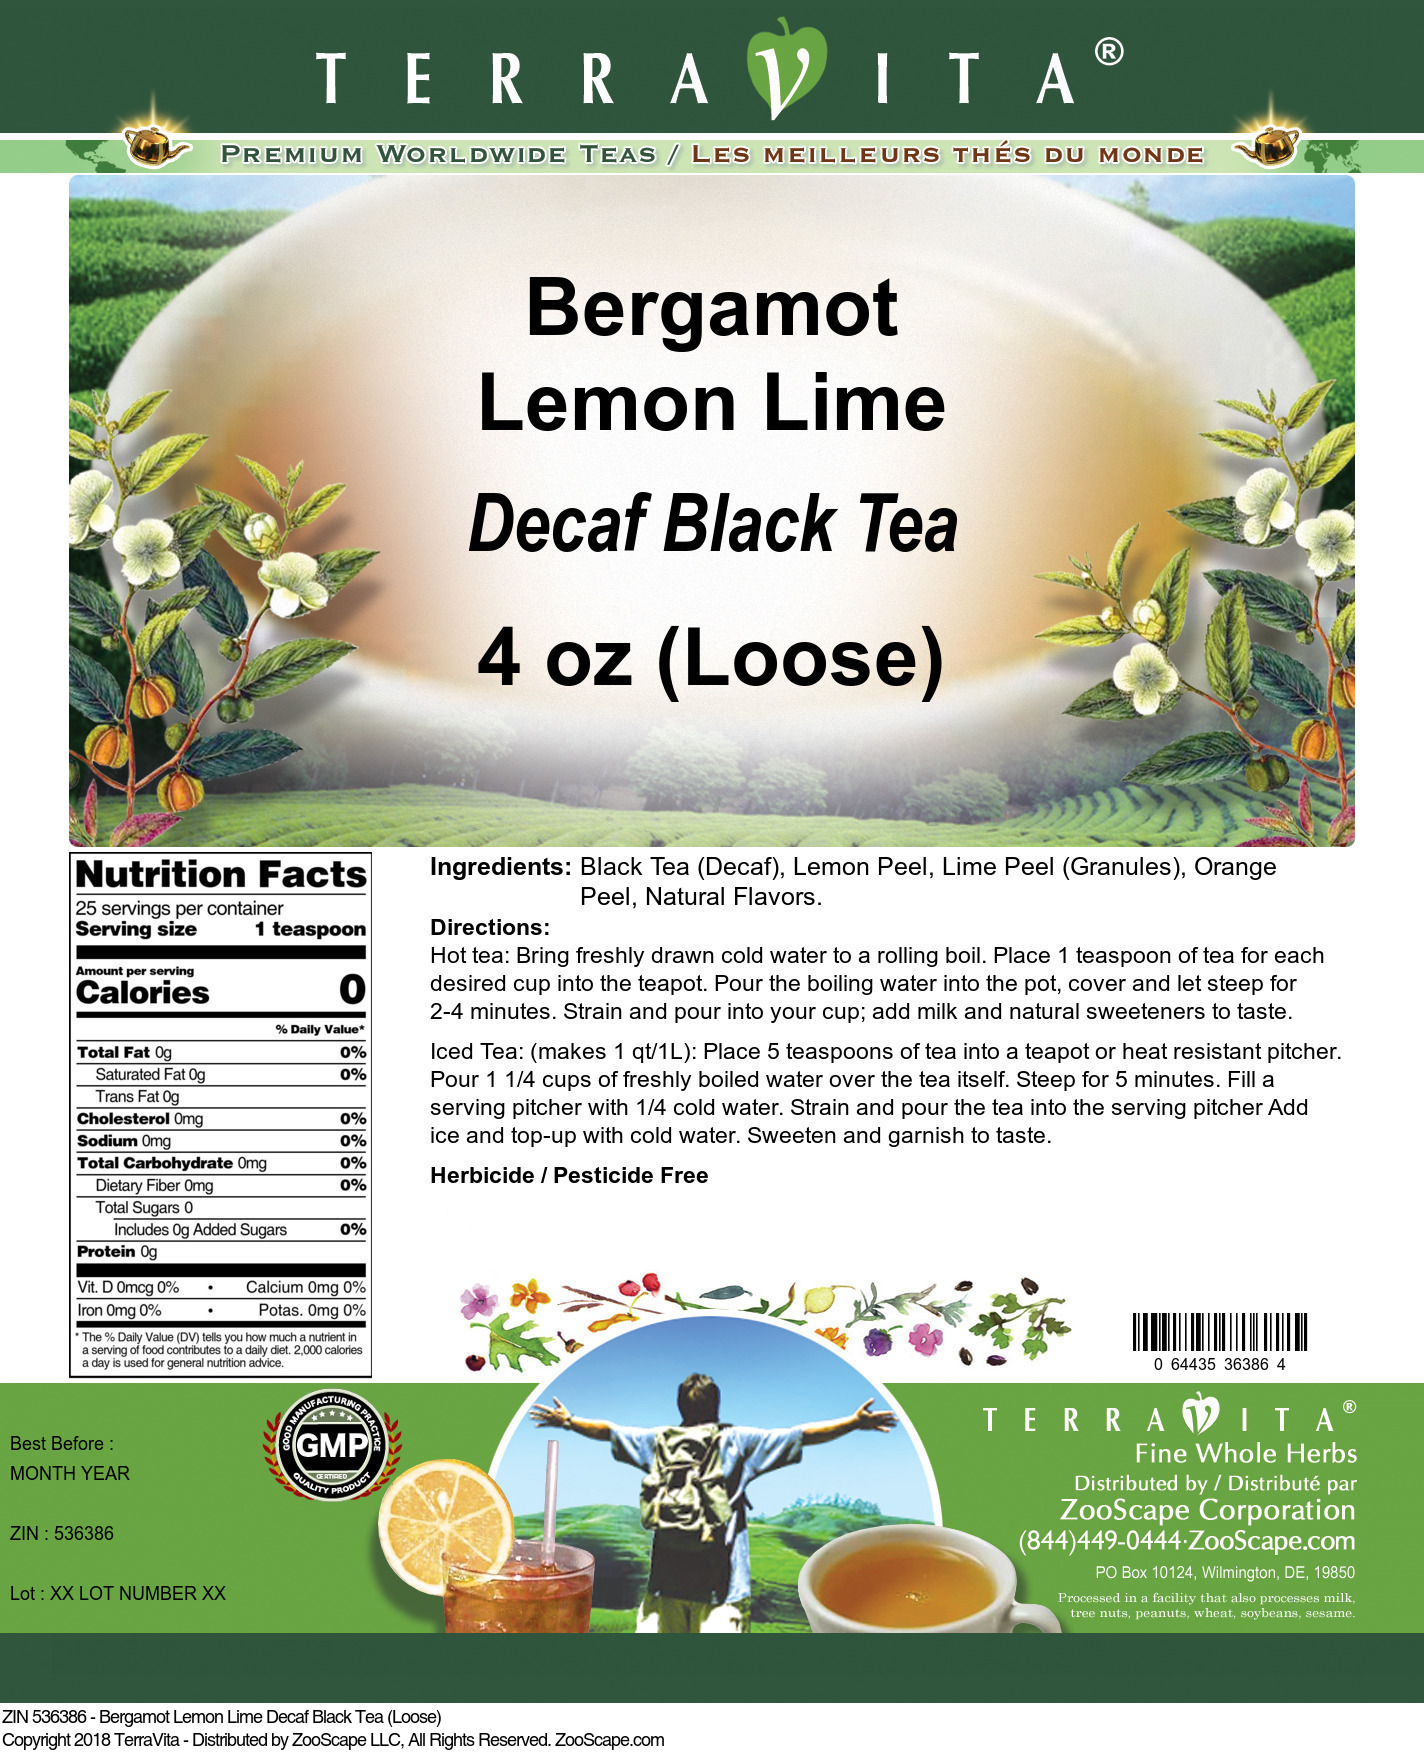 Bergamot Lemon Lime Decaf Black Tea (Loose) - Label